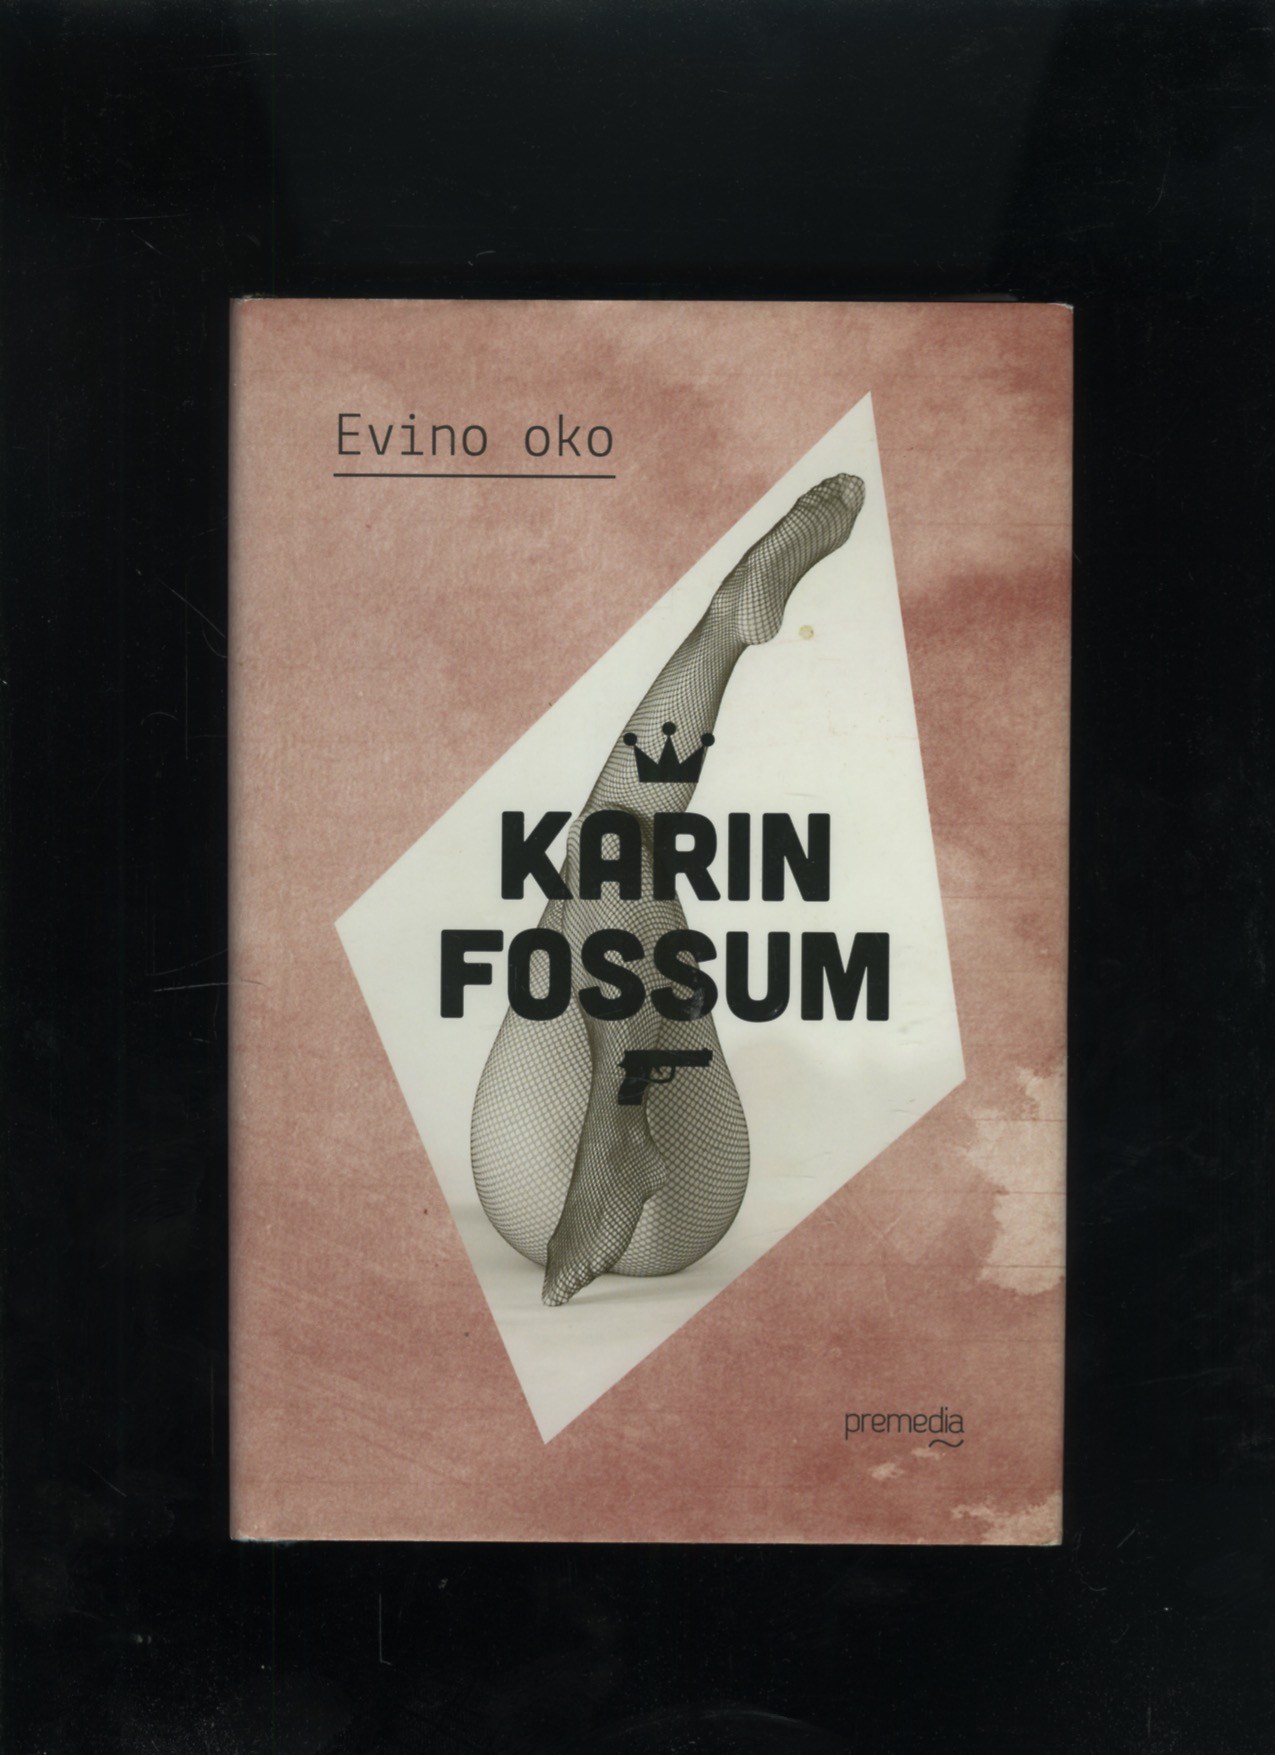 Evino oko (Karin Fossum)